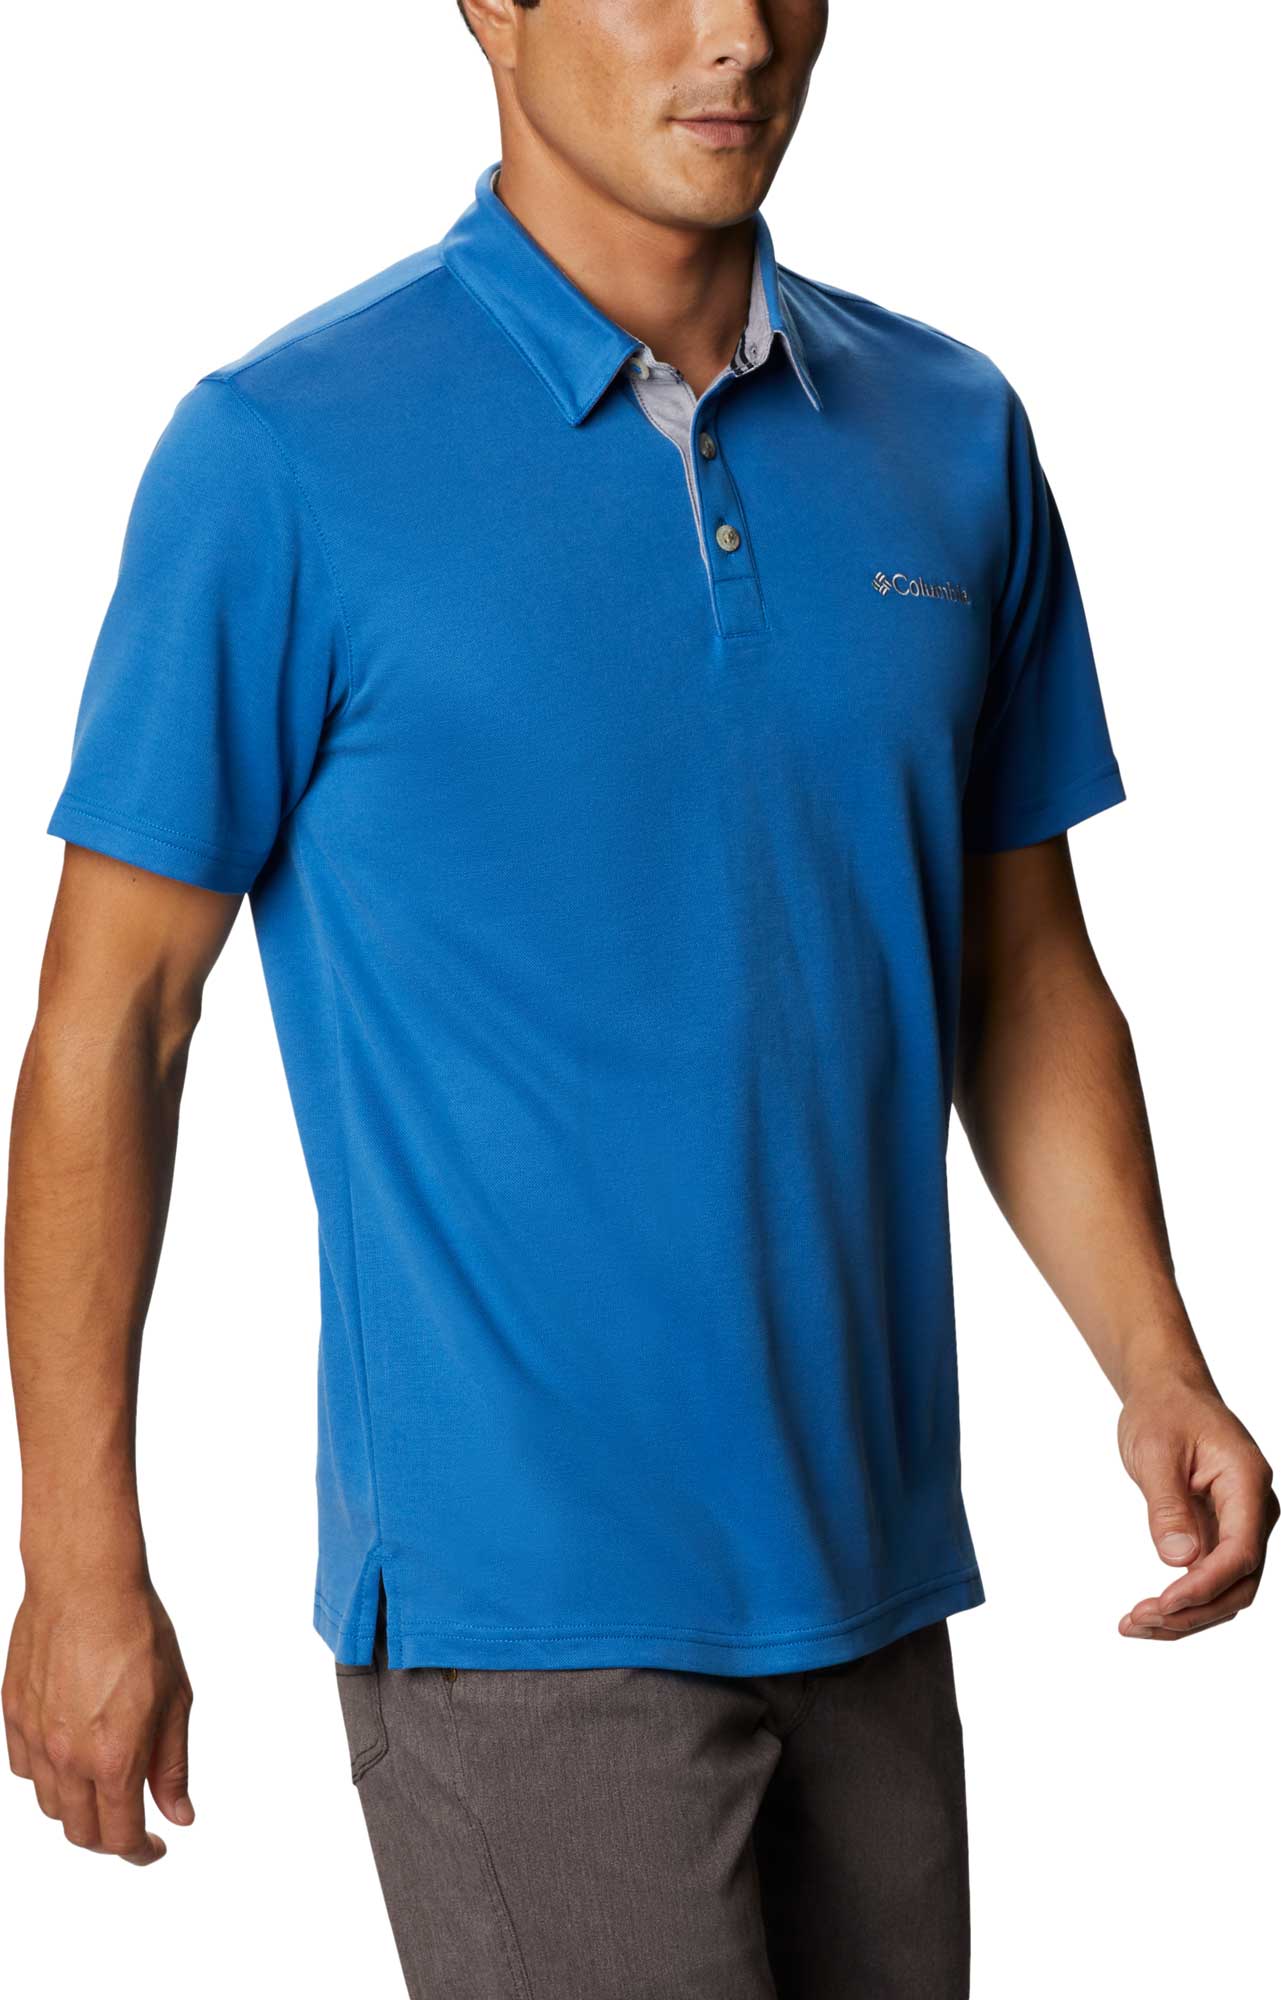 Men's polo shirt